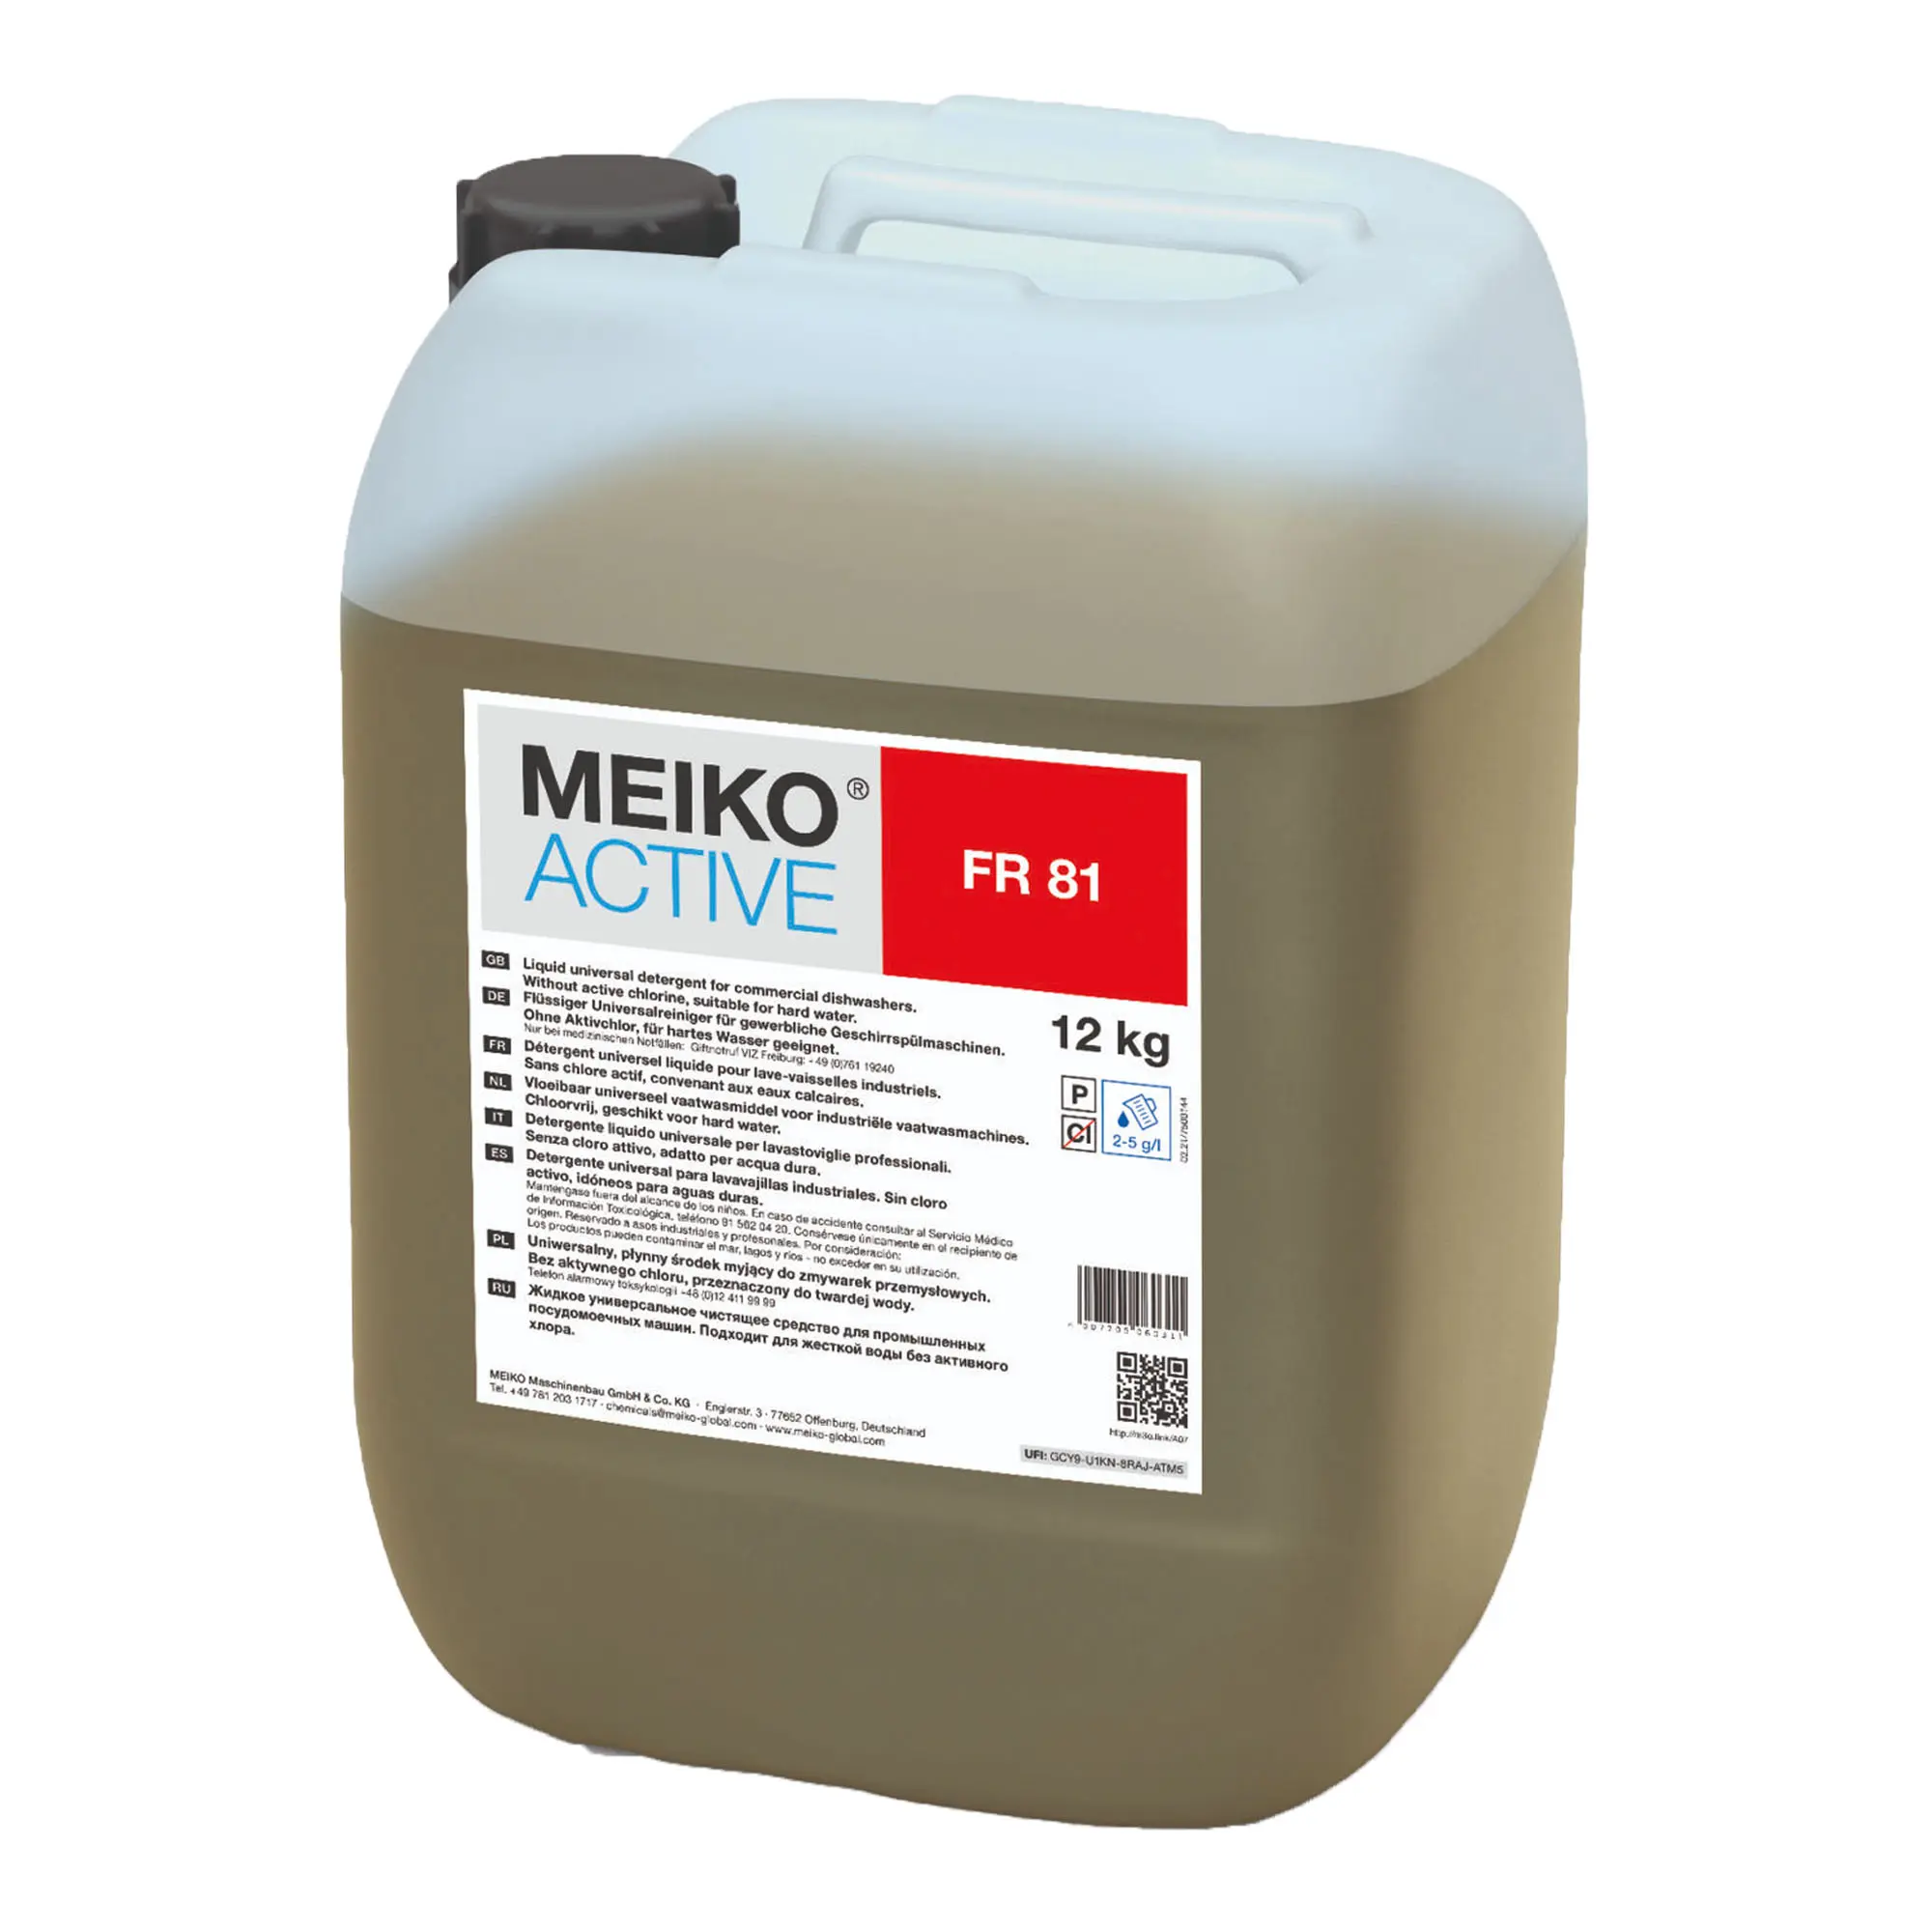 Meiko Active FR 81 flüssiger Universalreiniger für Geschirrspülmaschinen